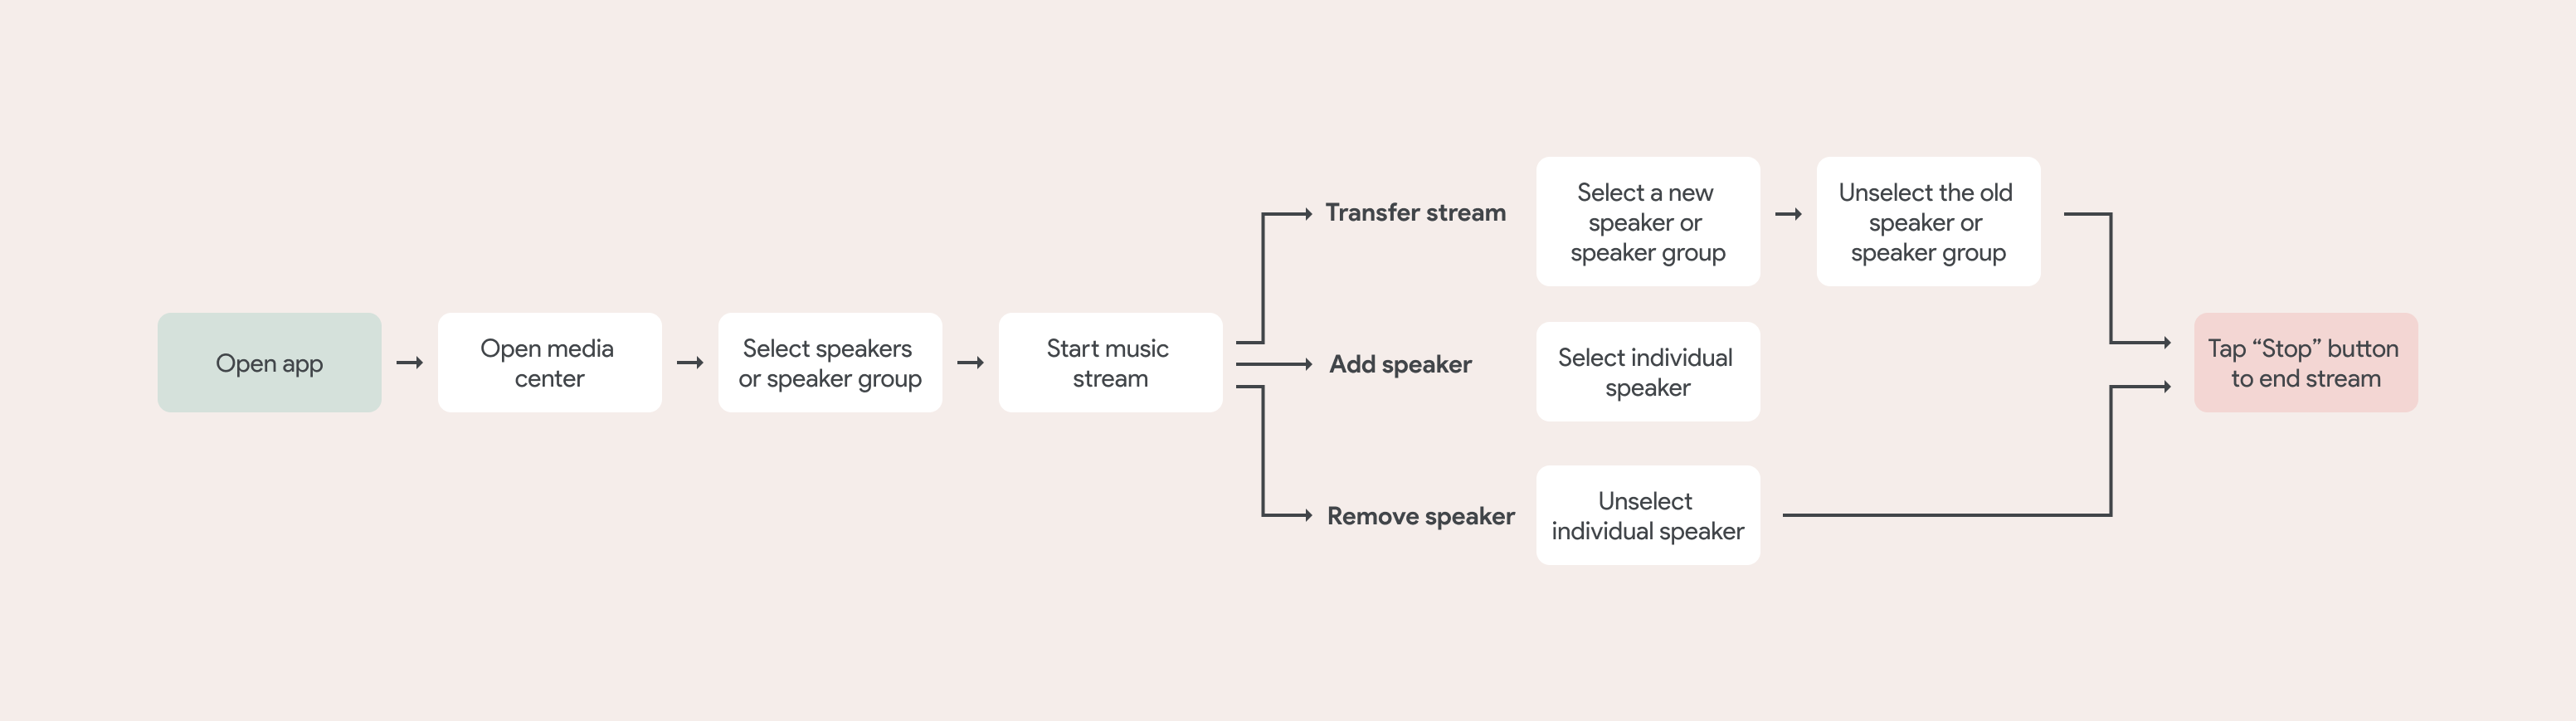 Google Home App dynamic speaker groups user journey map